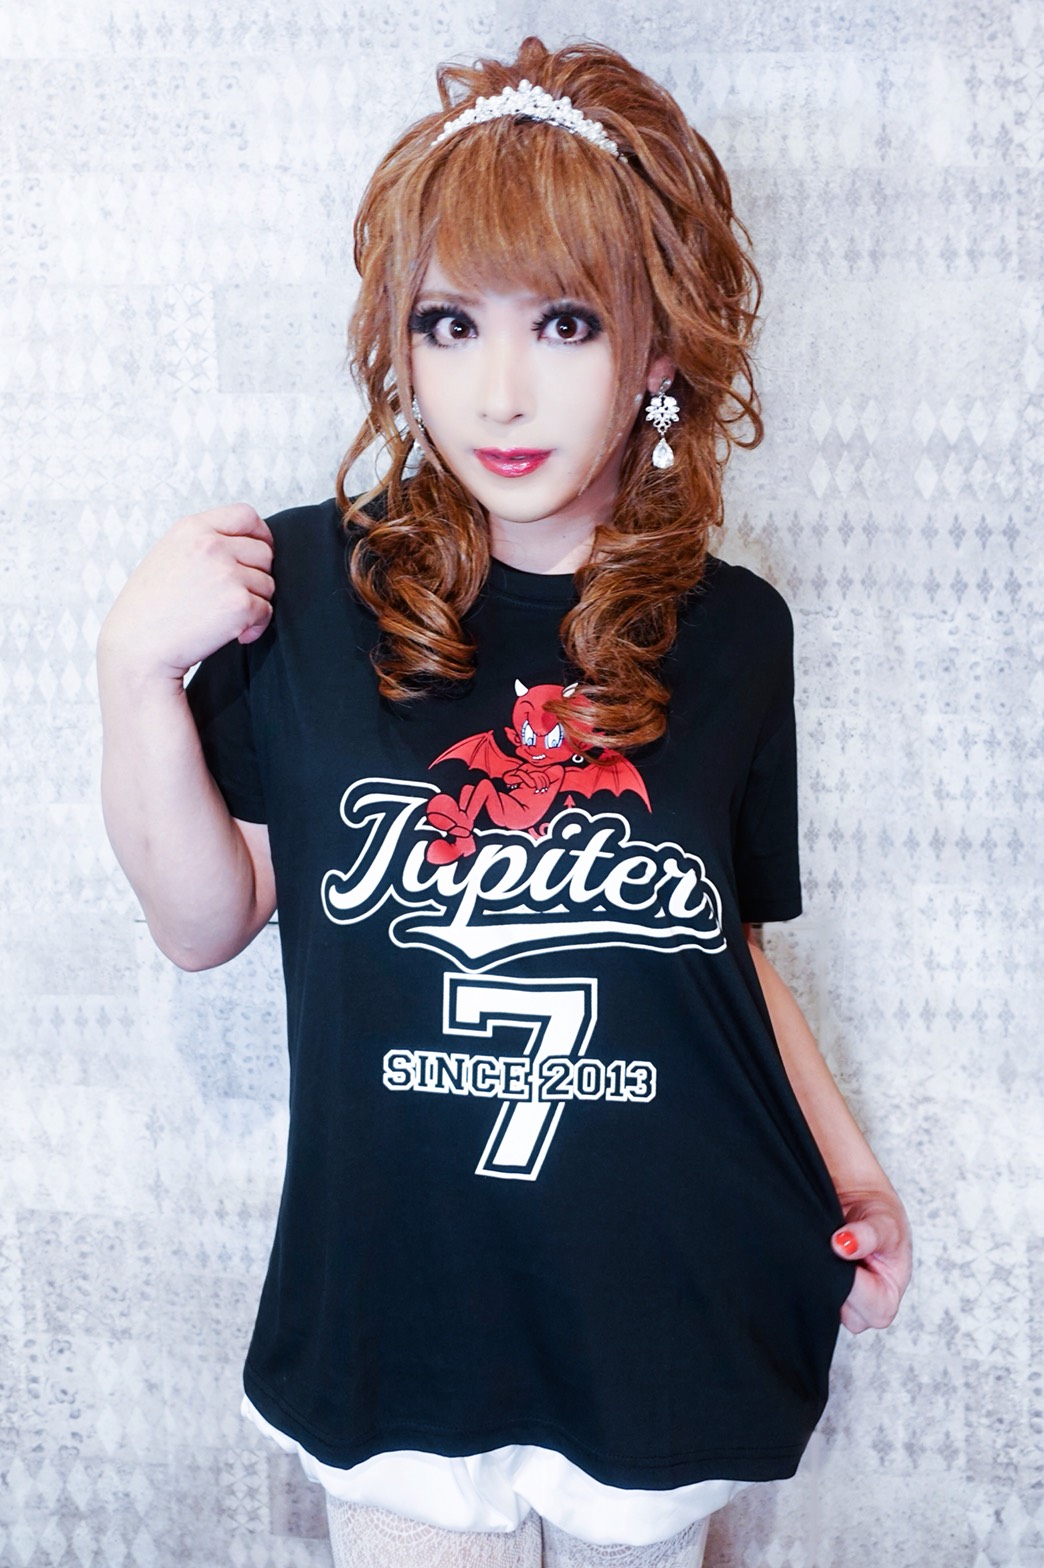 Jupiter 7th anniversary T-shirt